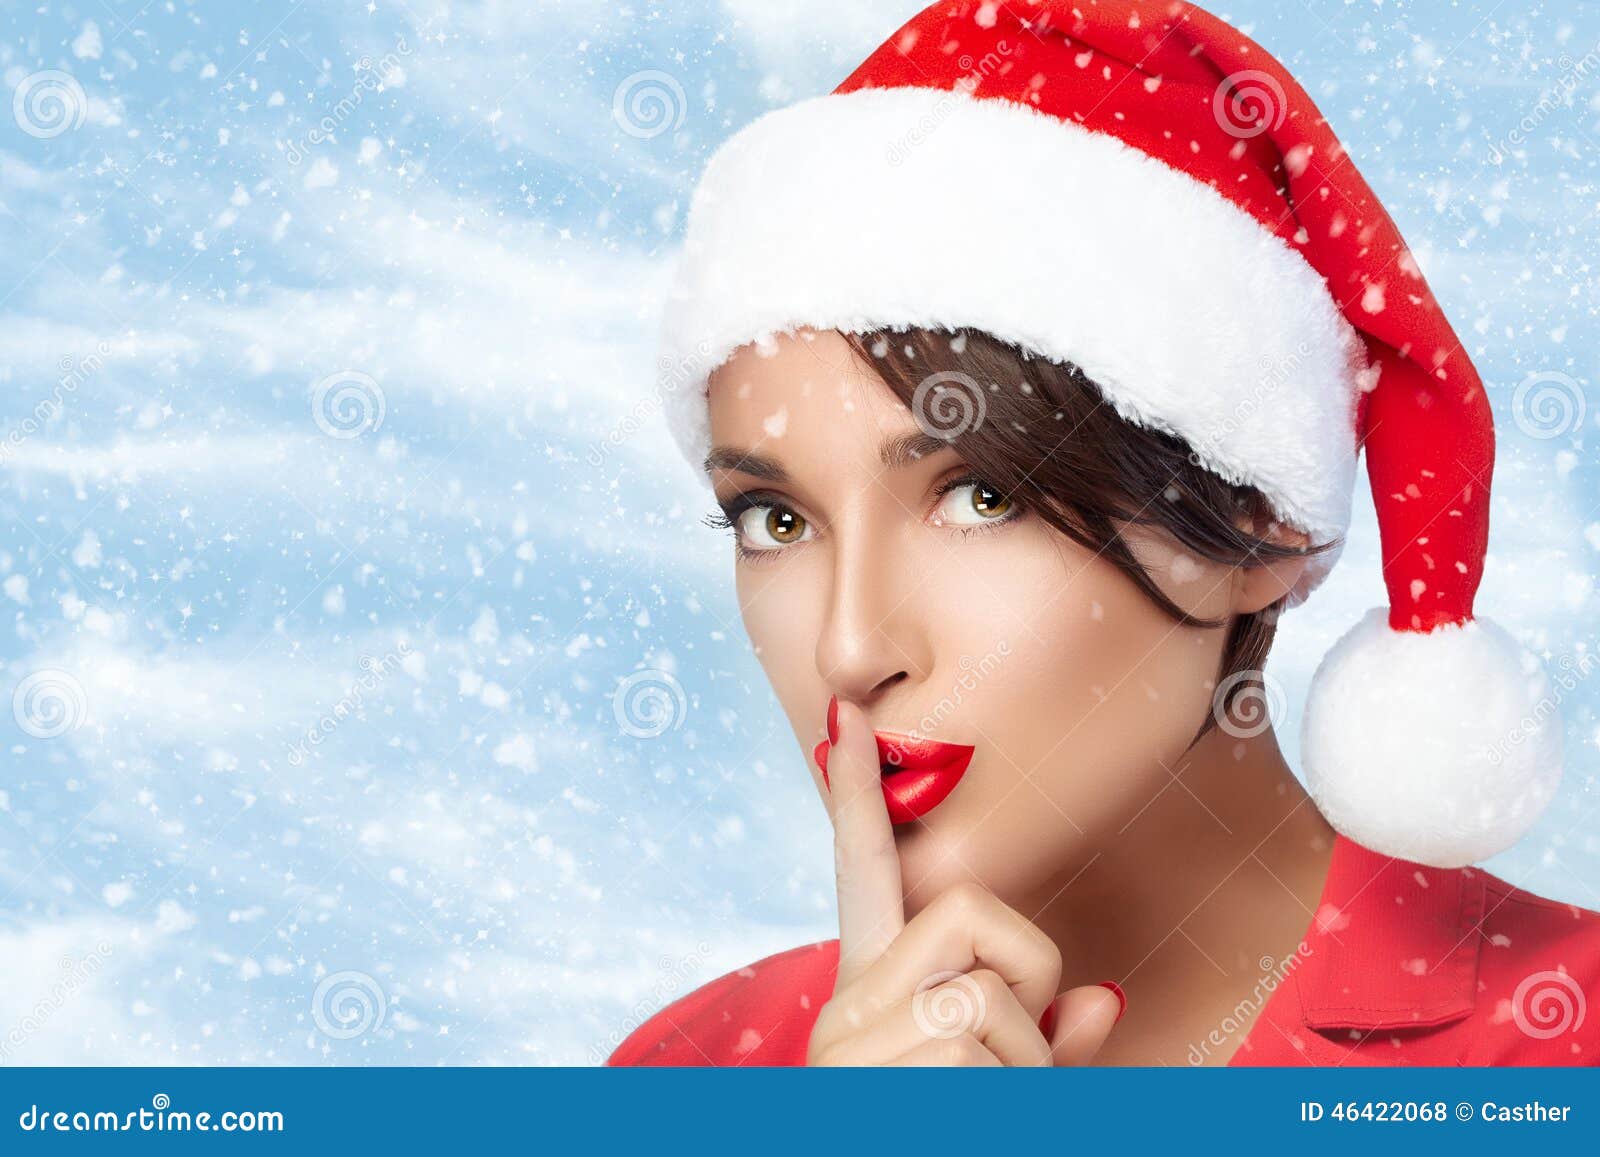 Christmas Girl in Santa Hat Doing a Hush Sign. Fashion Christmas Stock ...